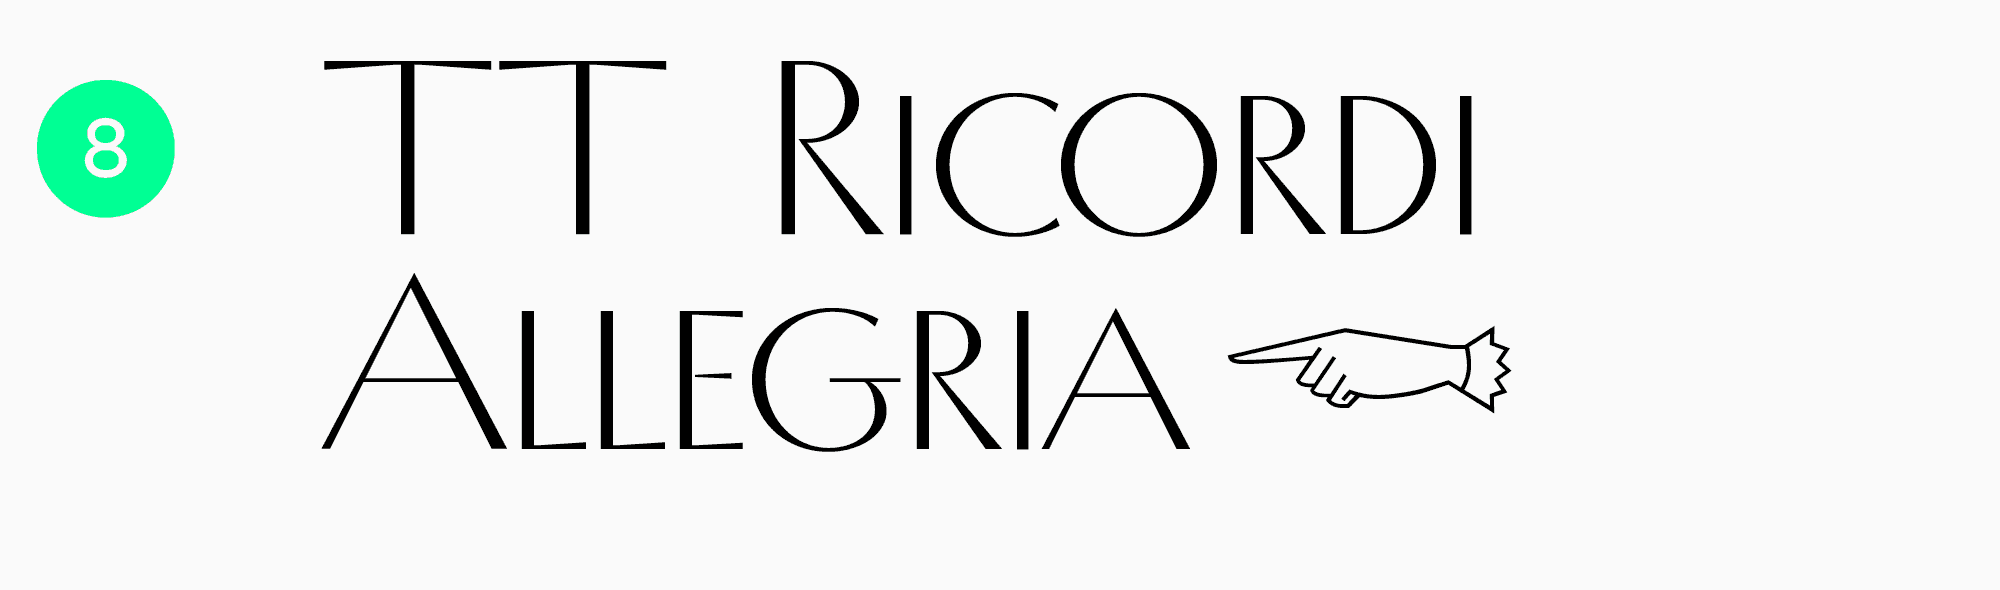 стильные шрифты для заголовков TT Ricordi Allegria
